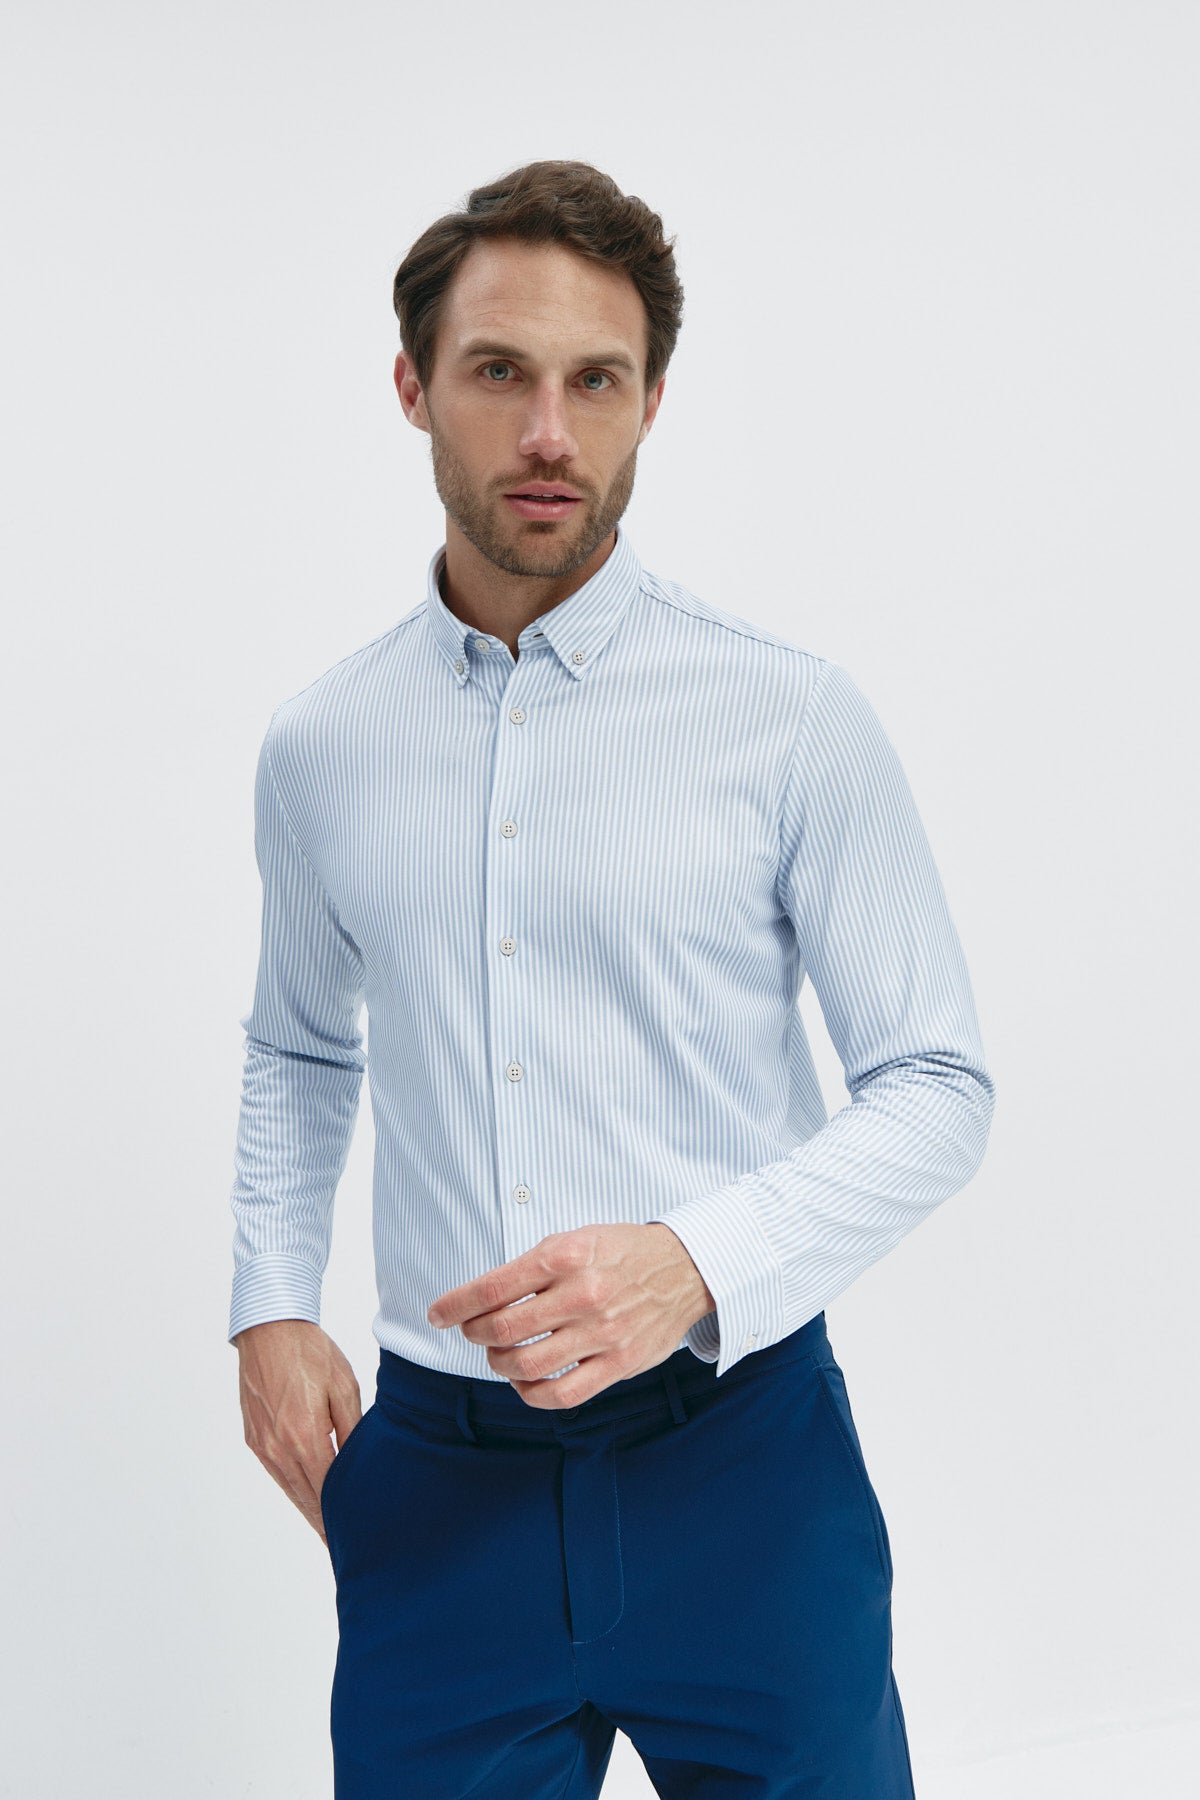 Camisa doble tono azul regular de Sepiia, estilo y comodidad en una prenda duradera. Foto de frente.